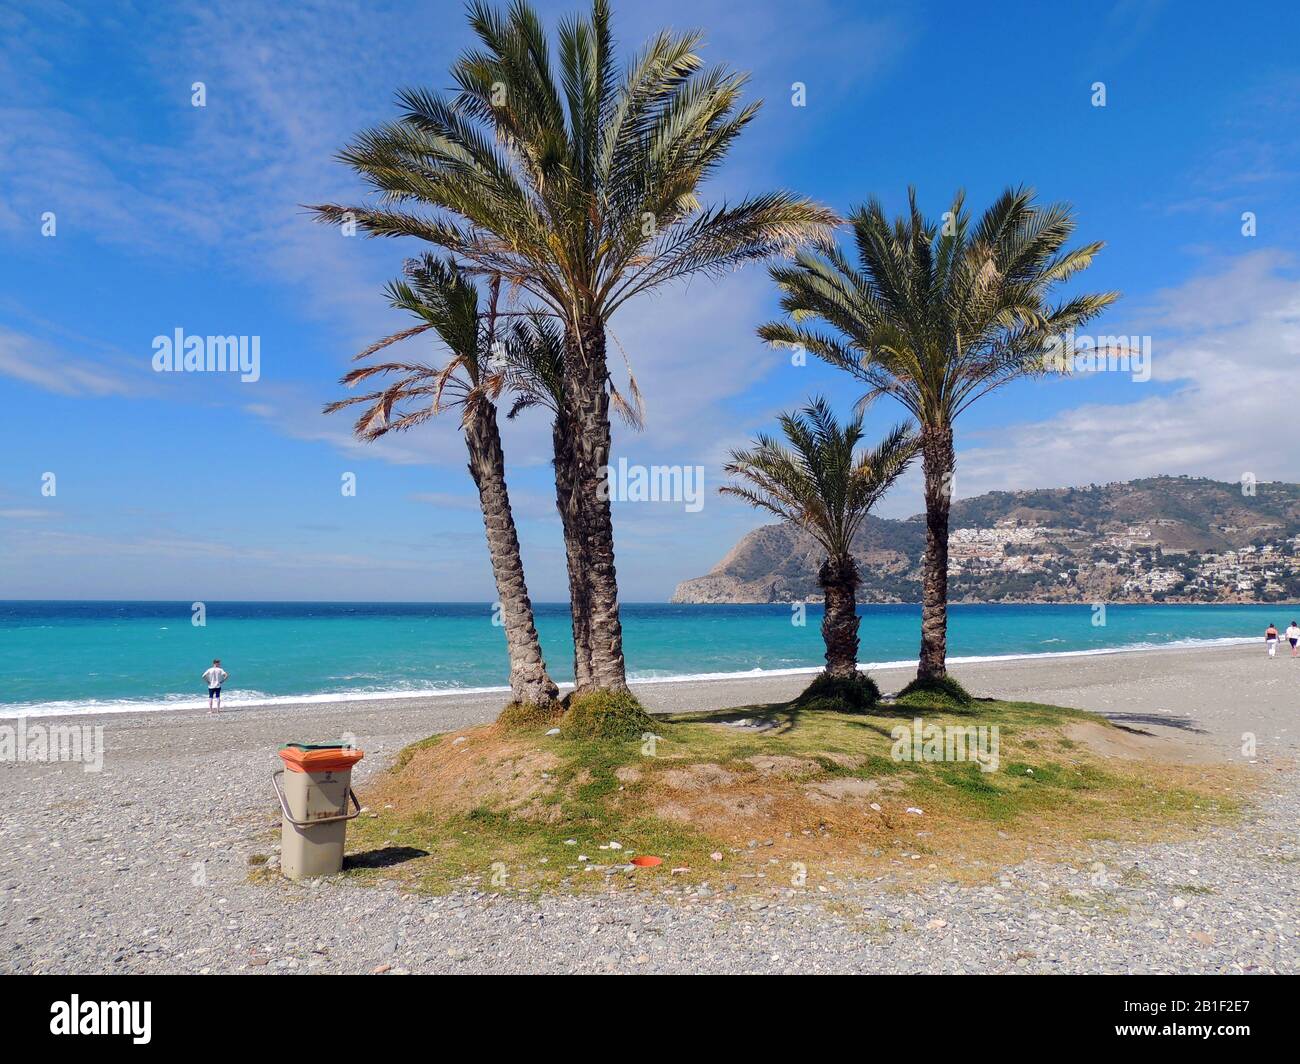 Gardez LE MED BIEN RANGÉ - la Heradurra, Espagne 2017 - un groupe de palmiers sur la plage attire les pickers, de sorte que l'autorité locale a fourni à l'endroit populaire avec son propre petit-pain pour le dépôt de la litière Banque D'Images